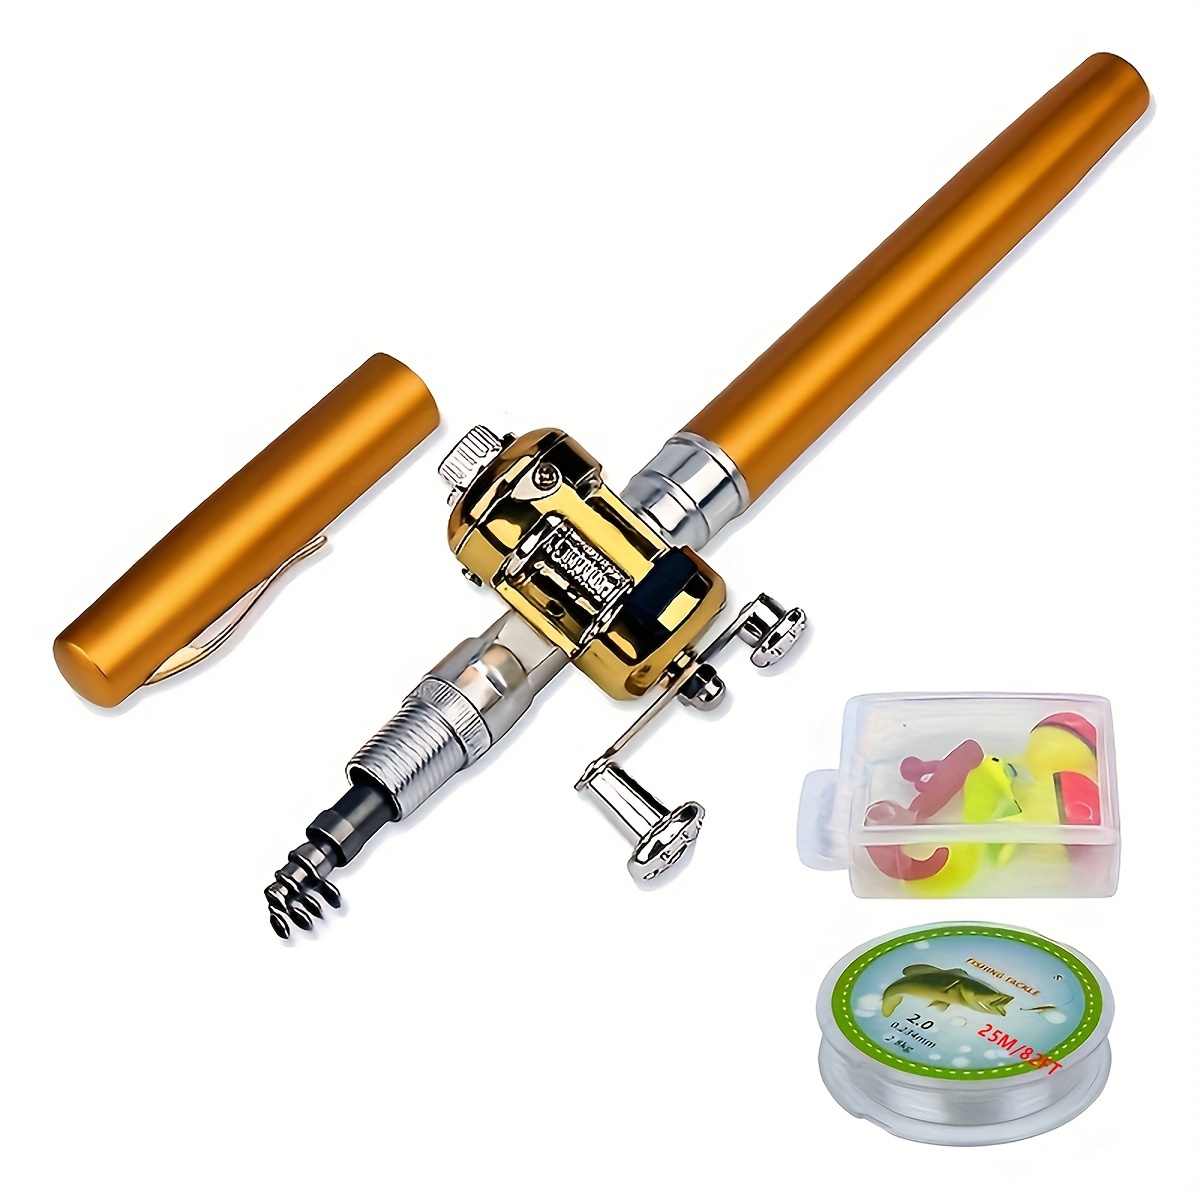 Anself Fishing Rod Reel Combo Kit Set Mini Telescopic Portable Pocket Pen Fishing Rod Pole + Reel Aluminum Alloy Fishing Accessories Gold